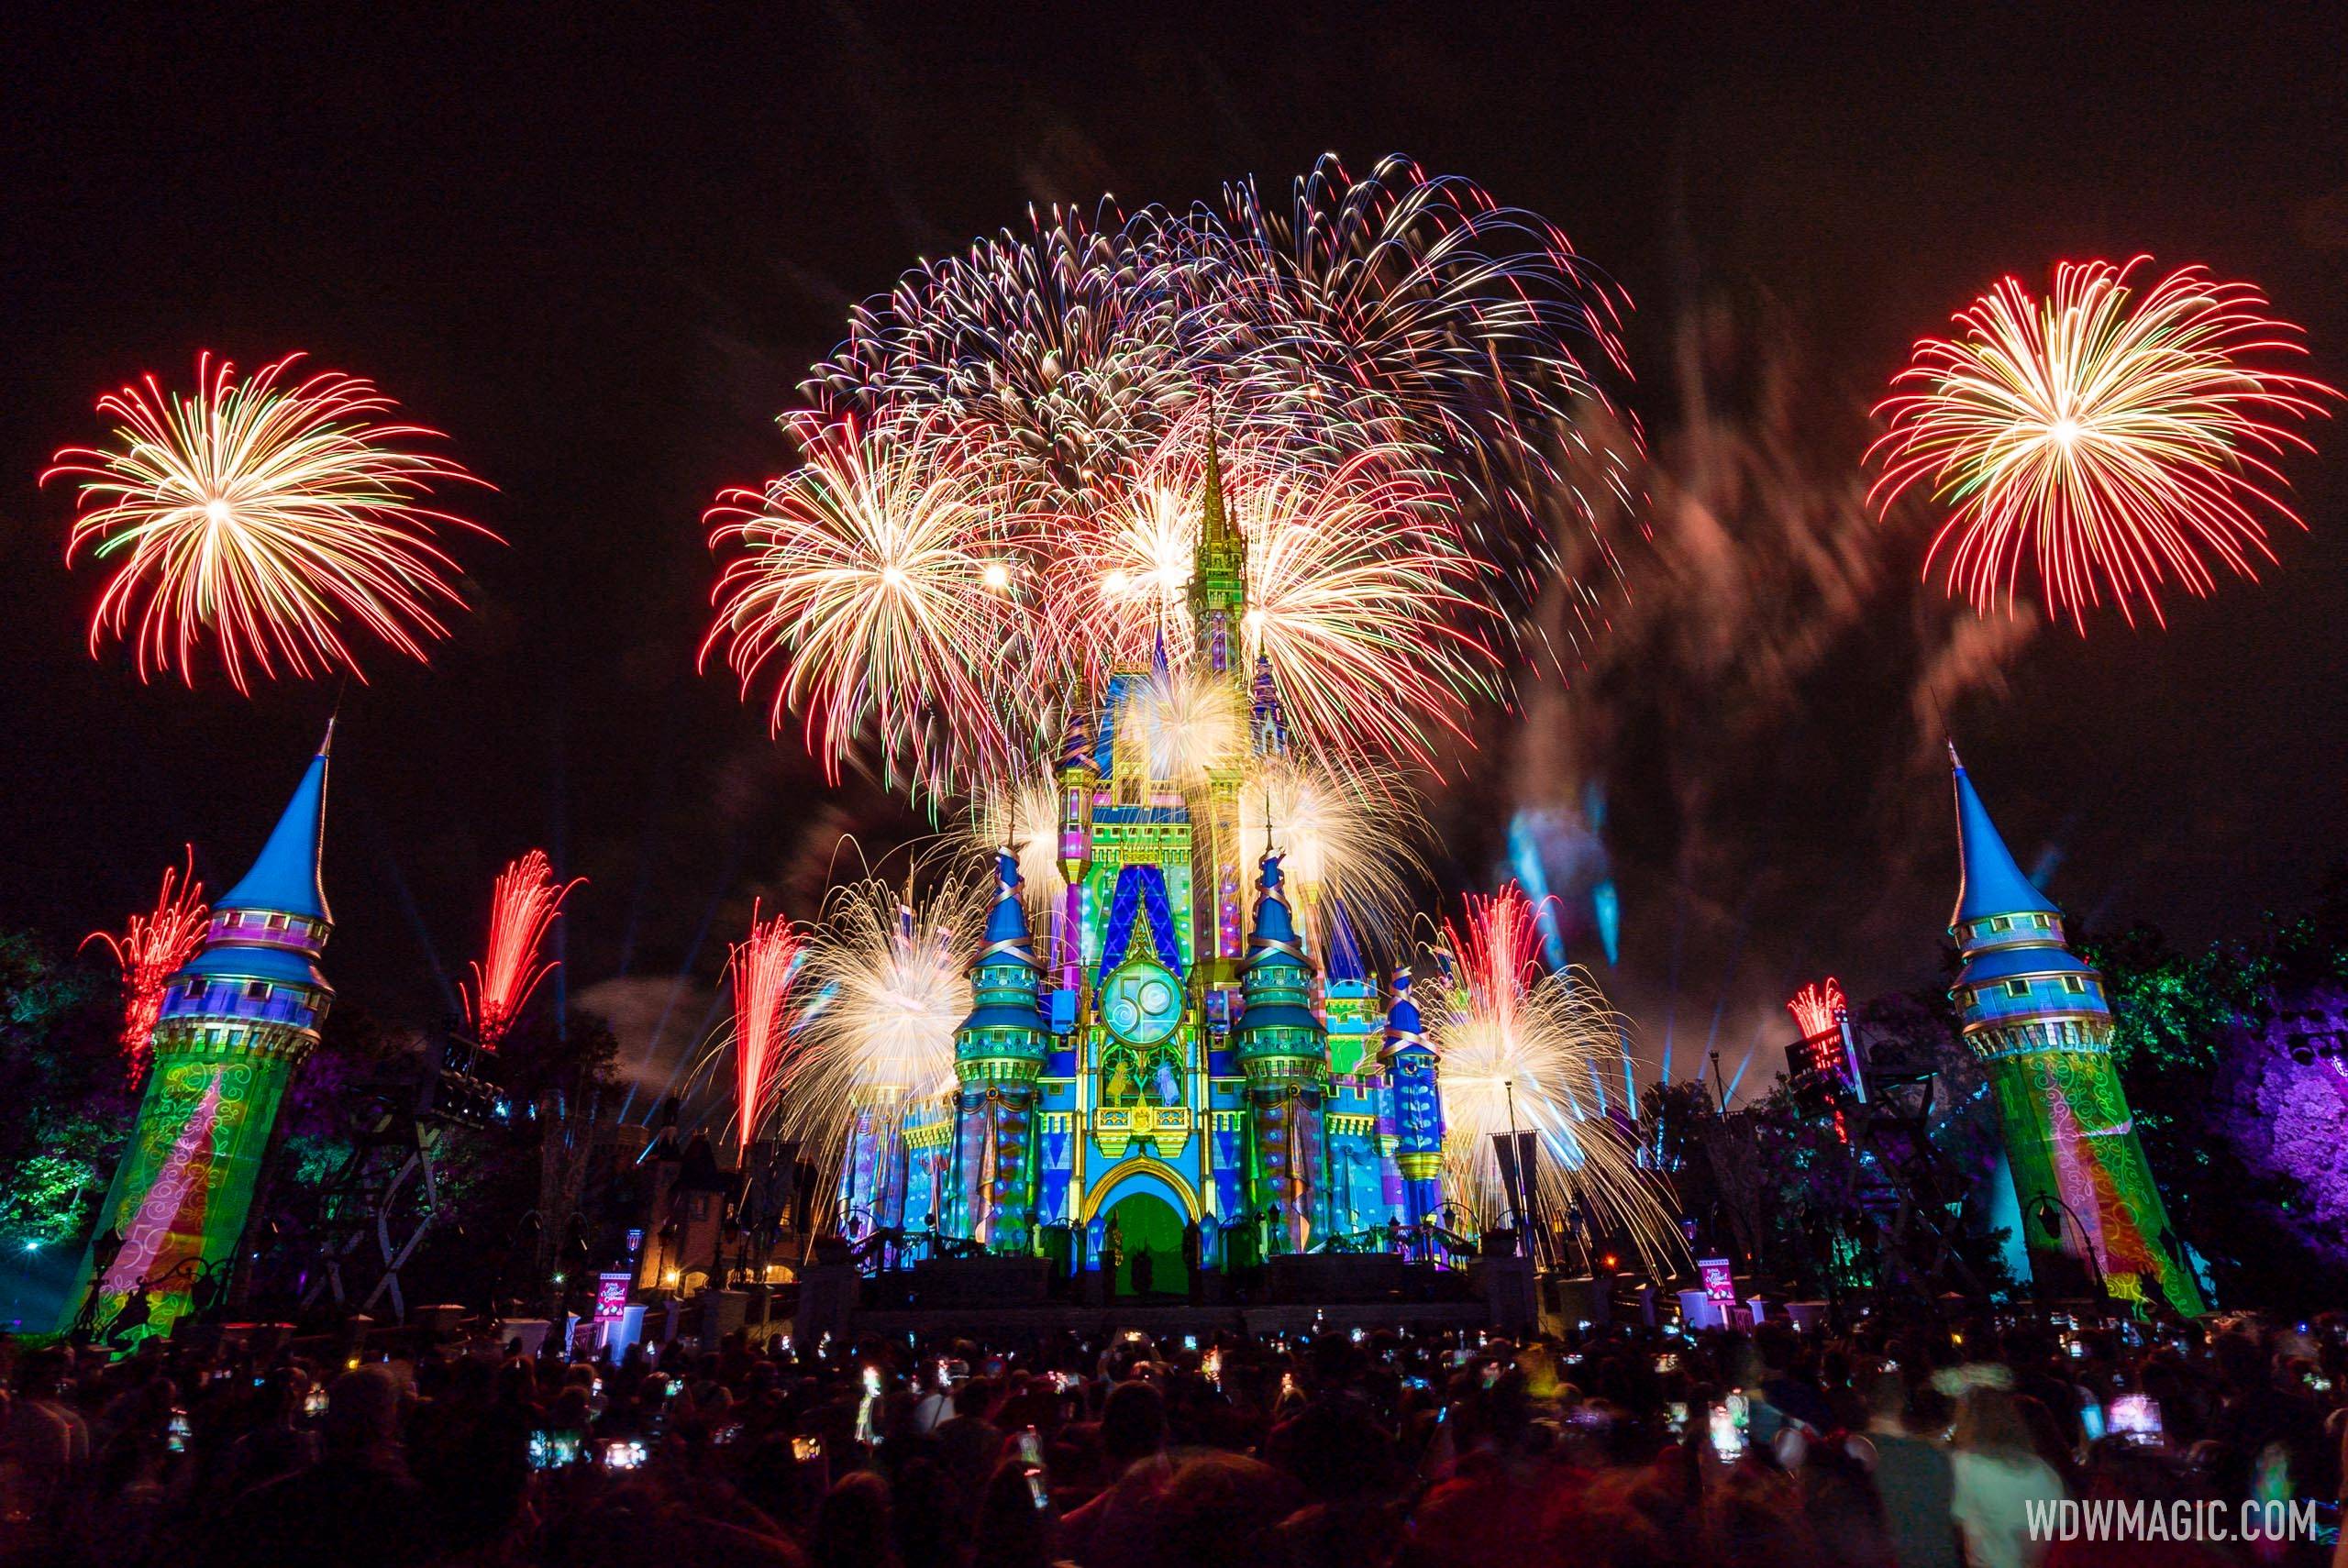 Minnie's Wonderful Christmastime Fireworks show